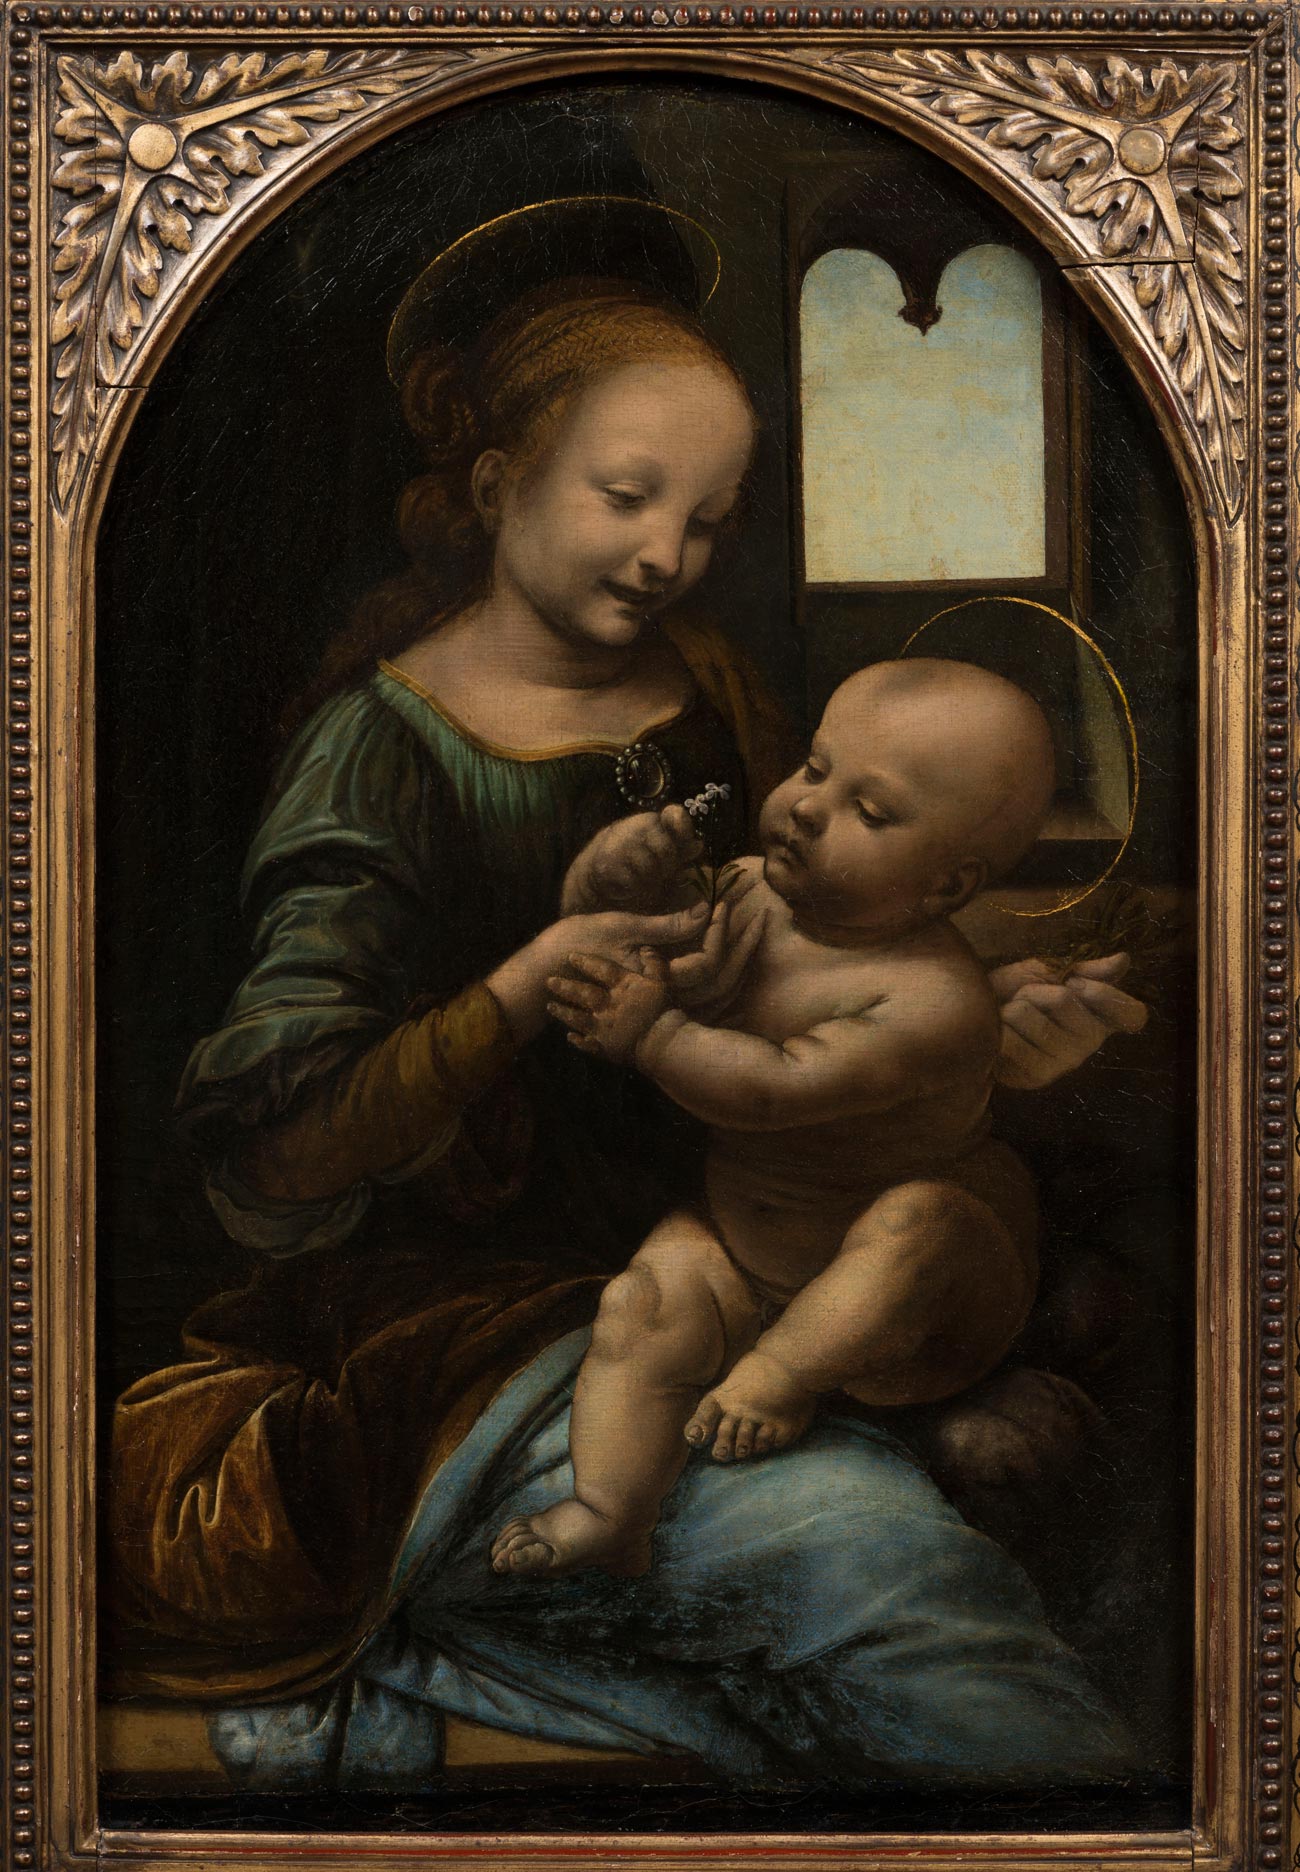 La Madonna Benois di Leonardo da Vinci alla Galleria Nazionale dell'Umbria, a confronto col Perugino